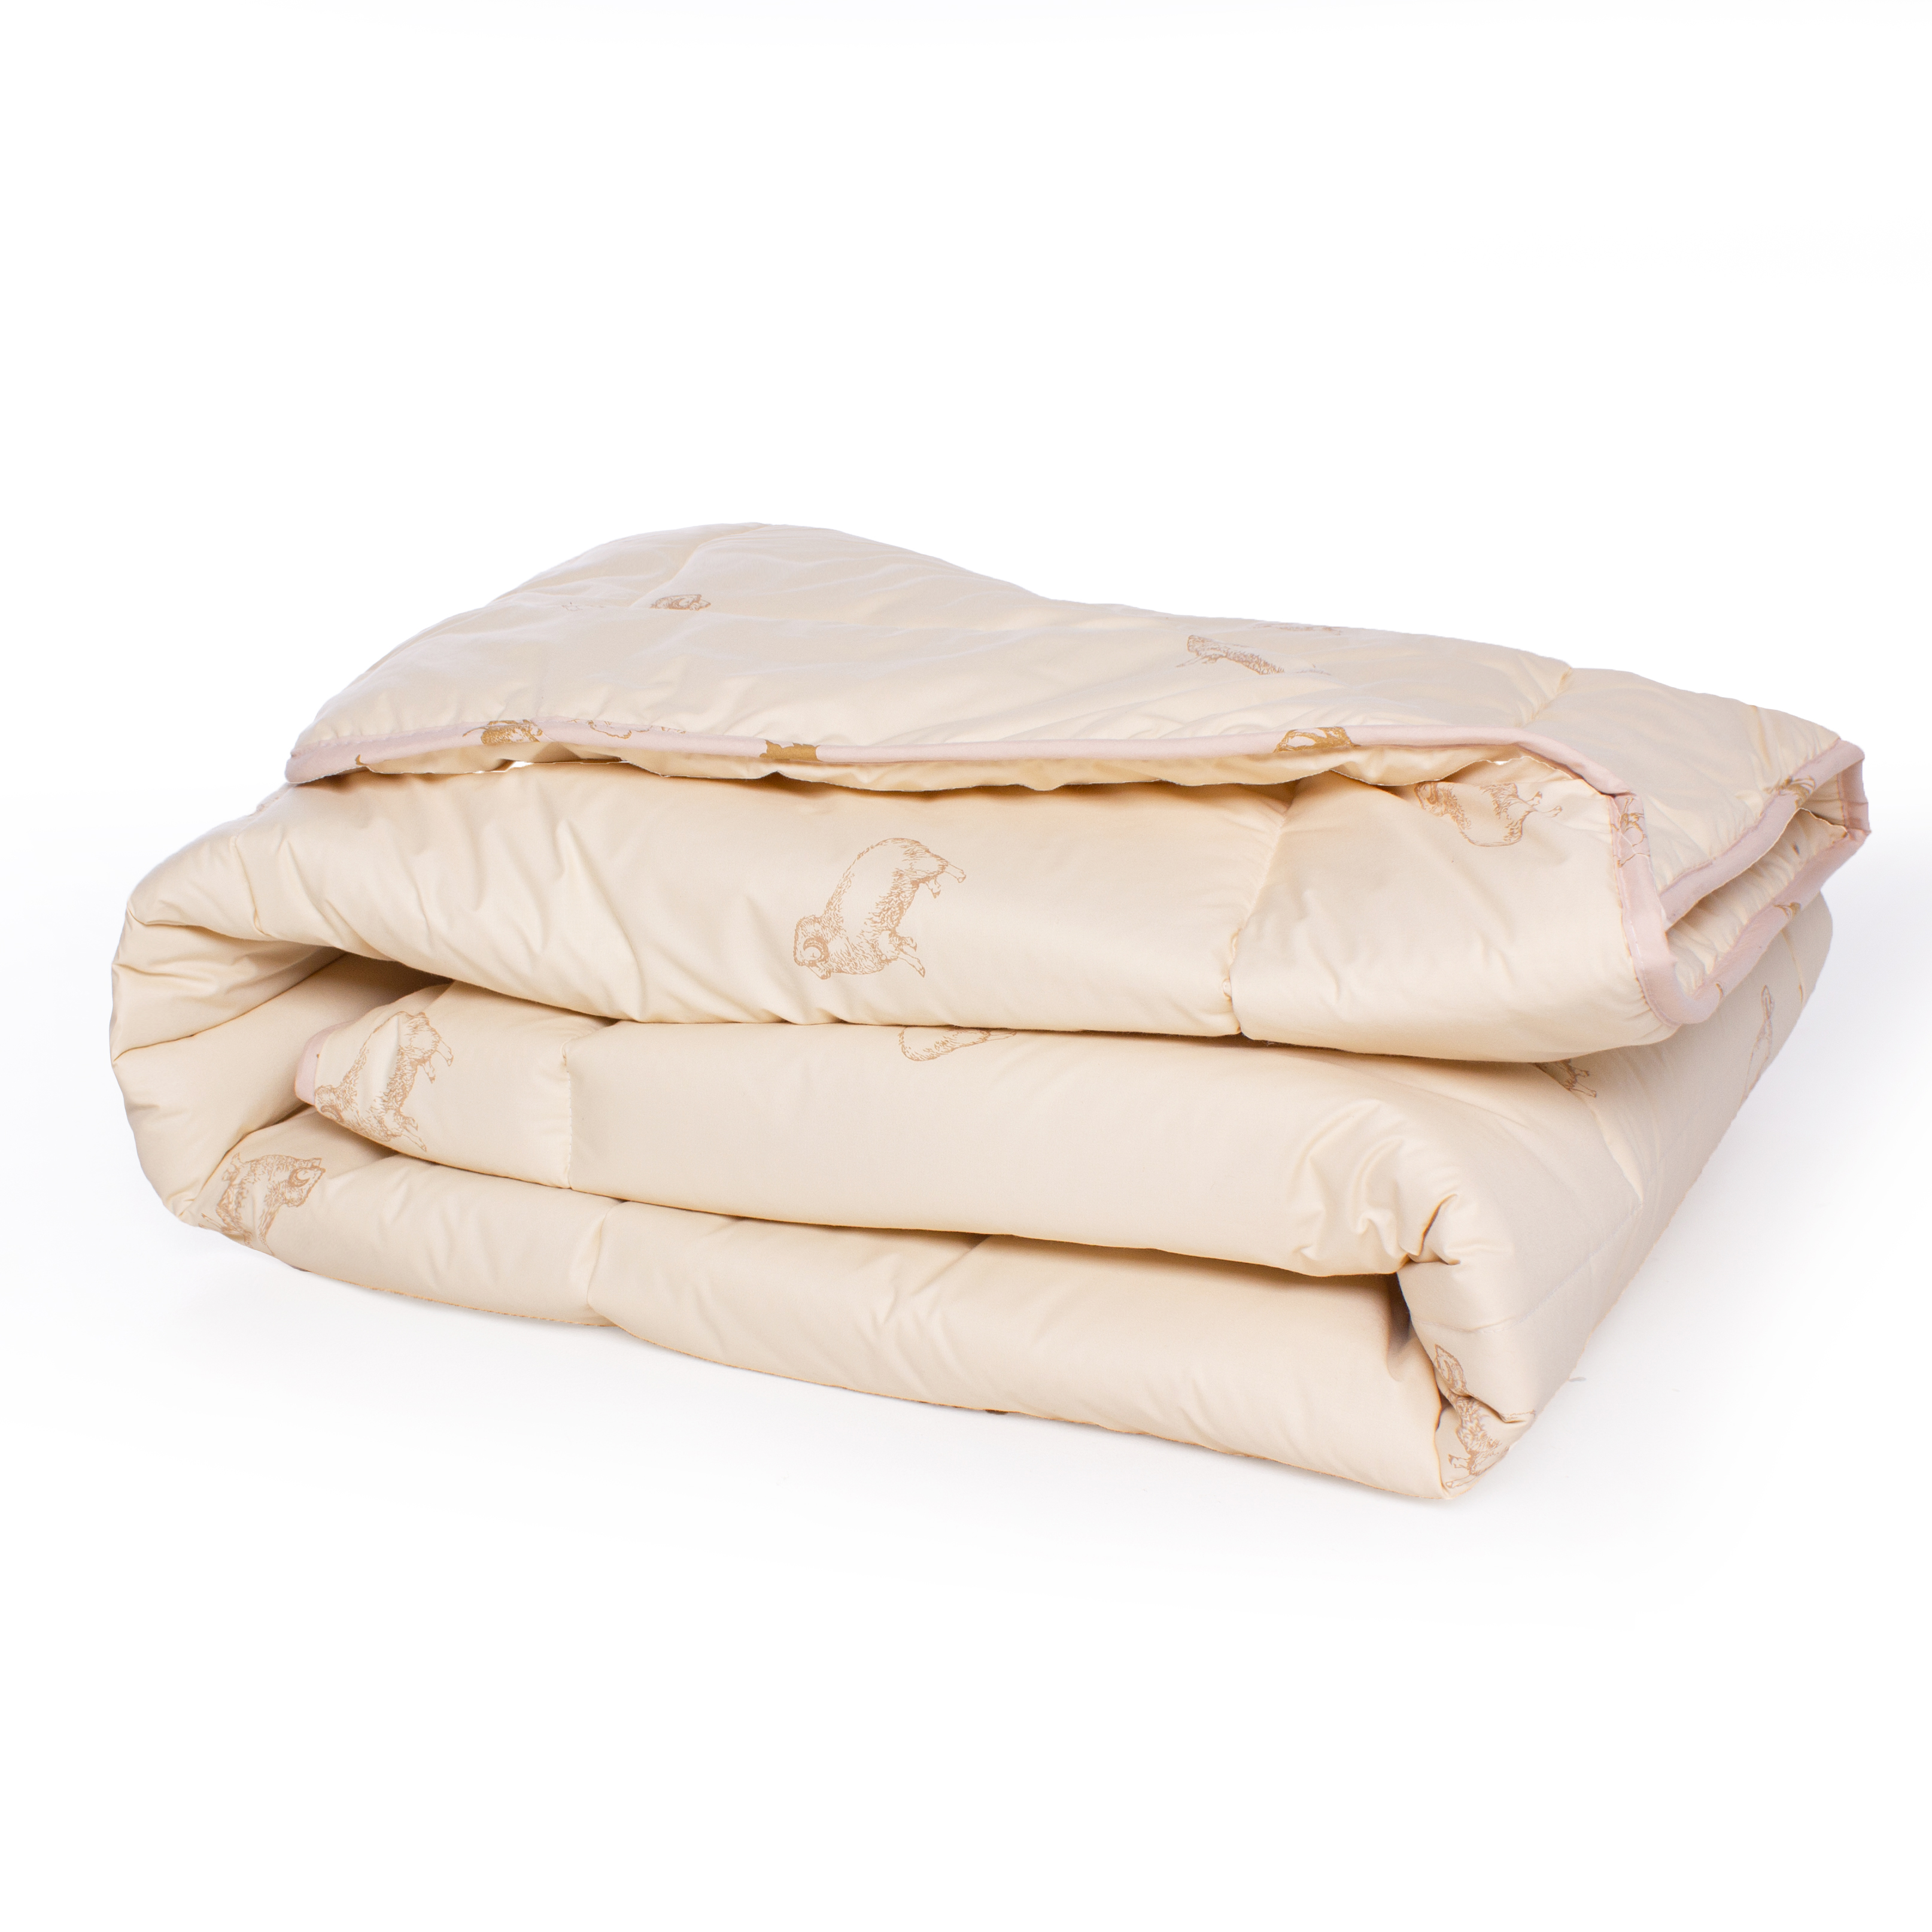 Одеяло шерстяное MirSon Gold Camel №023, демисезонное, 155x215 см, кремовое - фото 2